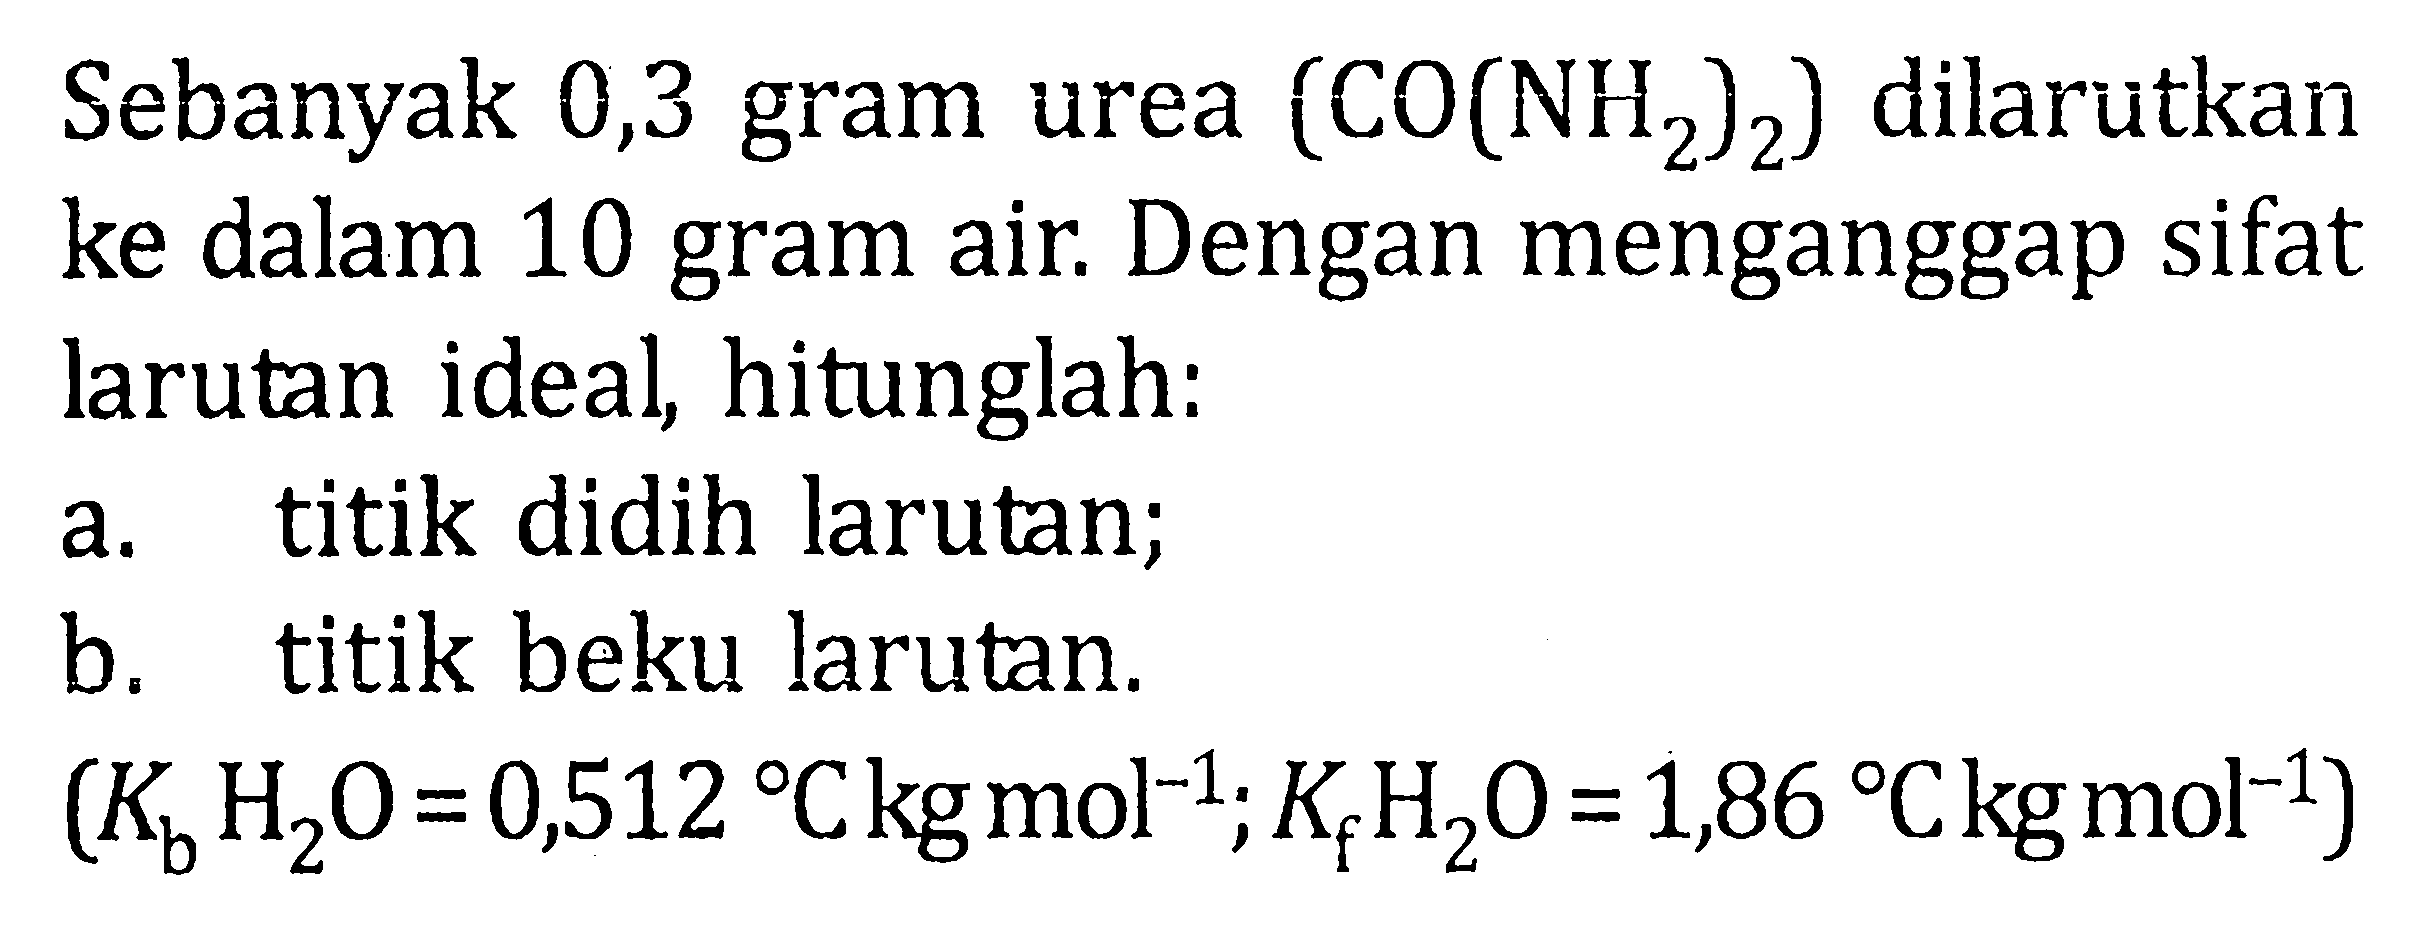 Sebanyak 0,3 gram urea (CO(NH2)2) dilarutkan ke dalam 10 gram air. Dengan menganggap sifat larutan ideal, hitunglah:a. titik didih larutan;b. titik beku larutan.(Kb H2O=0,512 C kg mol^-1 ; Kf H2O=1,86 C kg mol^-1)